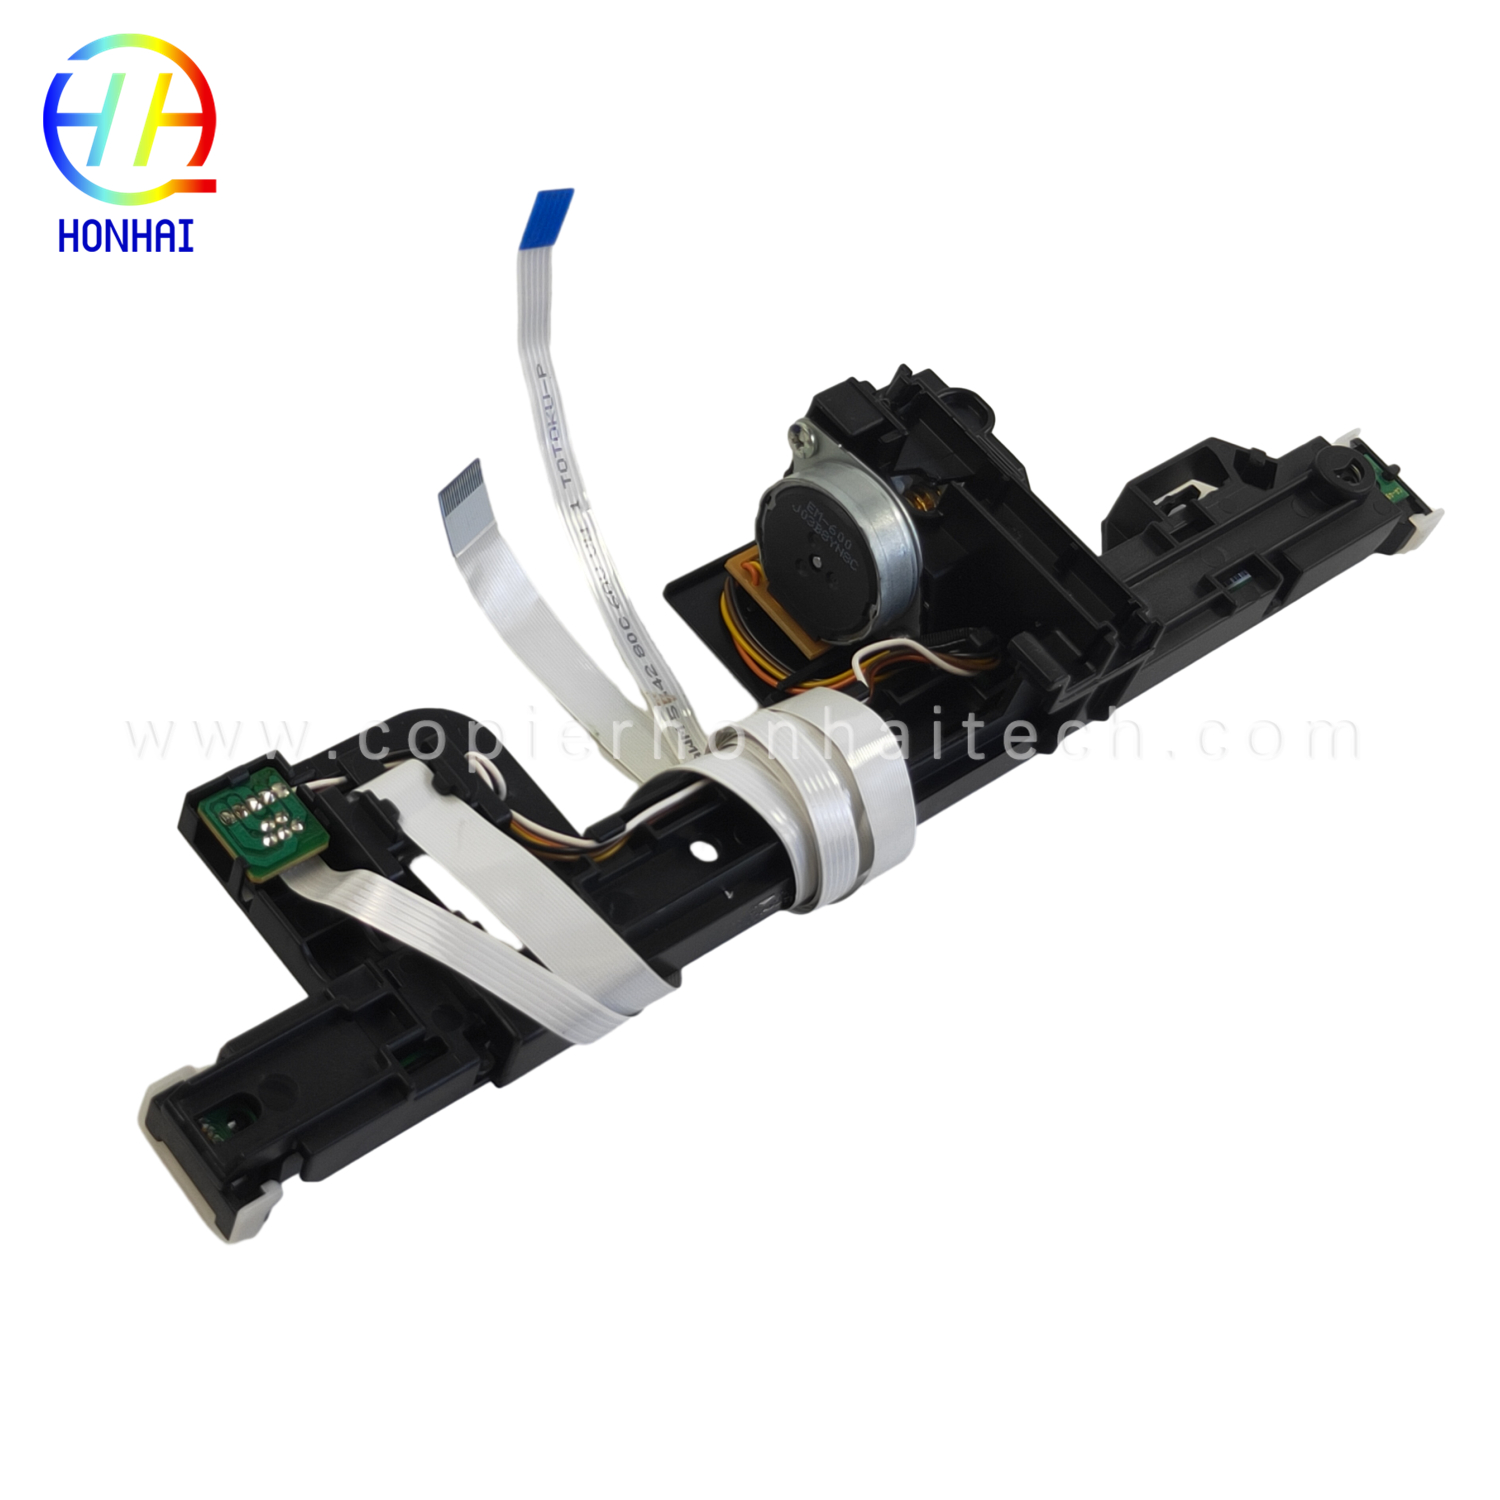 https://www.copierhonhaitech.com/scanner-flex-cable-for-epson-l3110-l3210-3150-l3250-product/